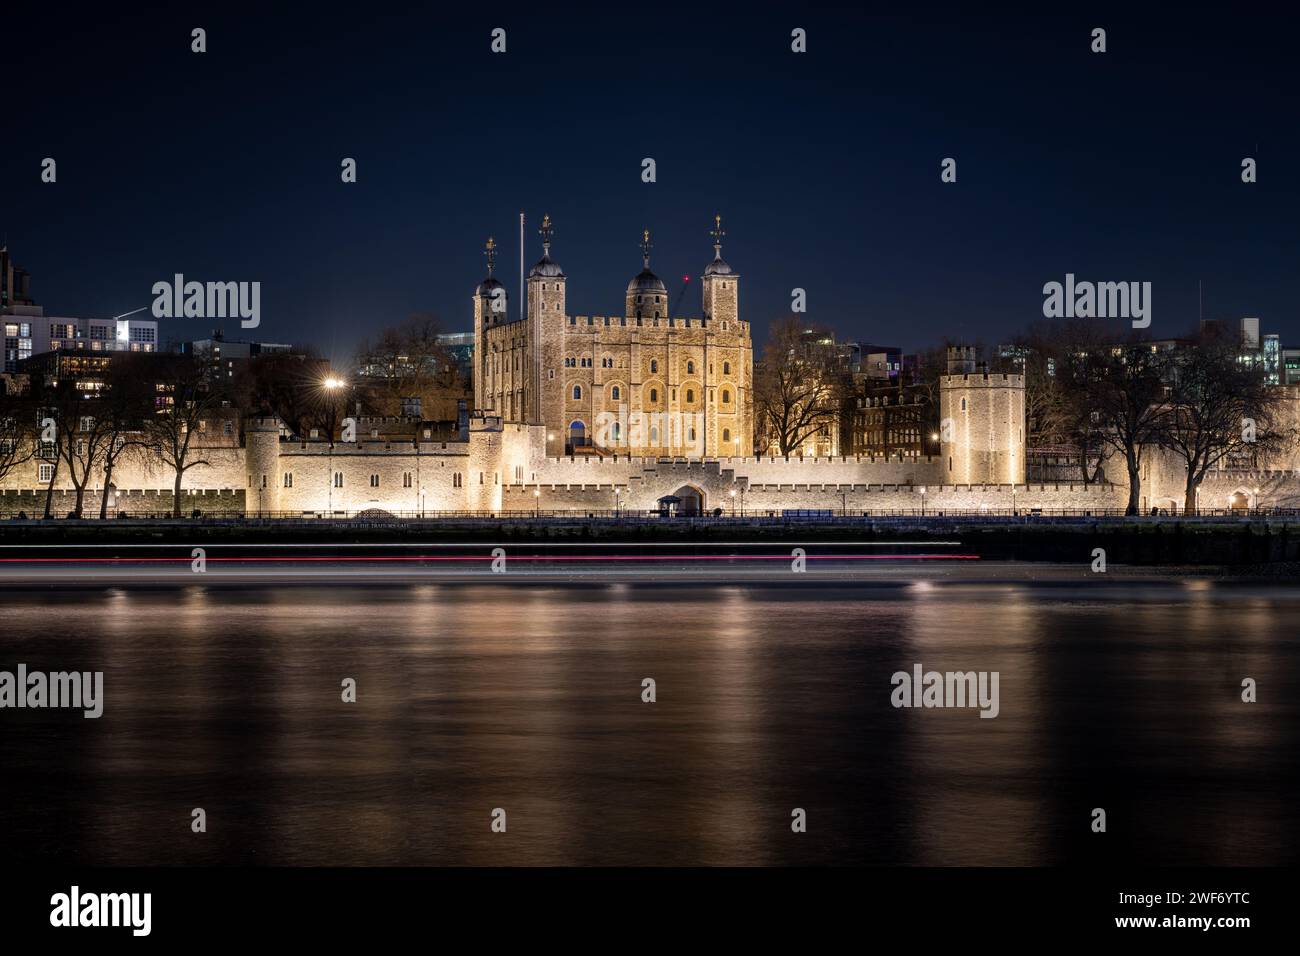 Ein allgemeiner Blick auf den Tower of London bei Nacht mit Lichtreflexen auf der Themse. Nachtaufnahmen mit langer Belichtung. Stockfoto